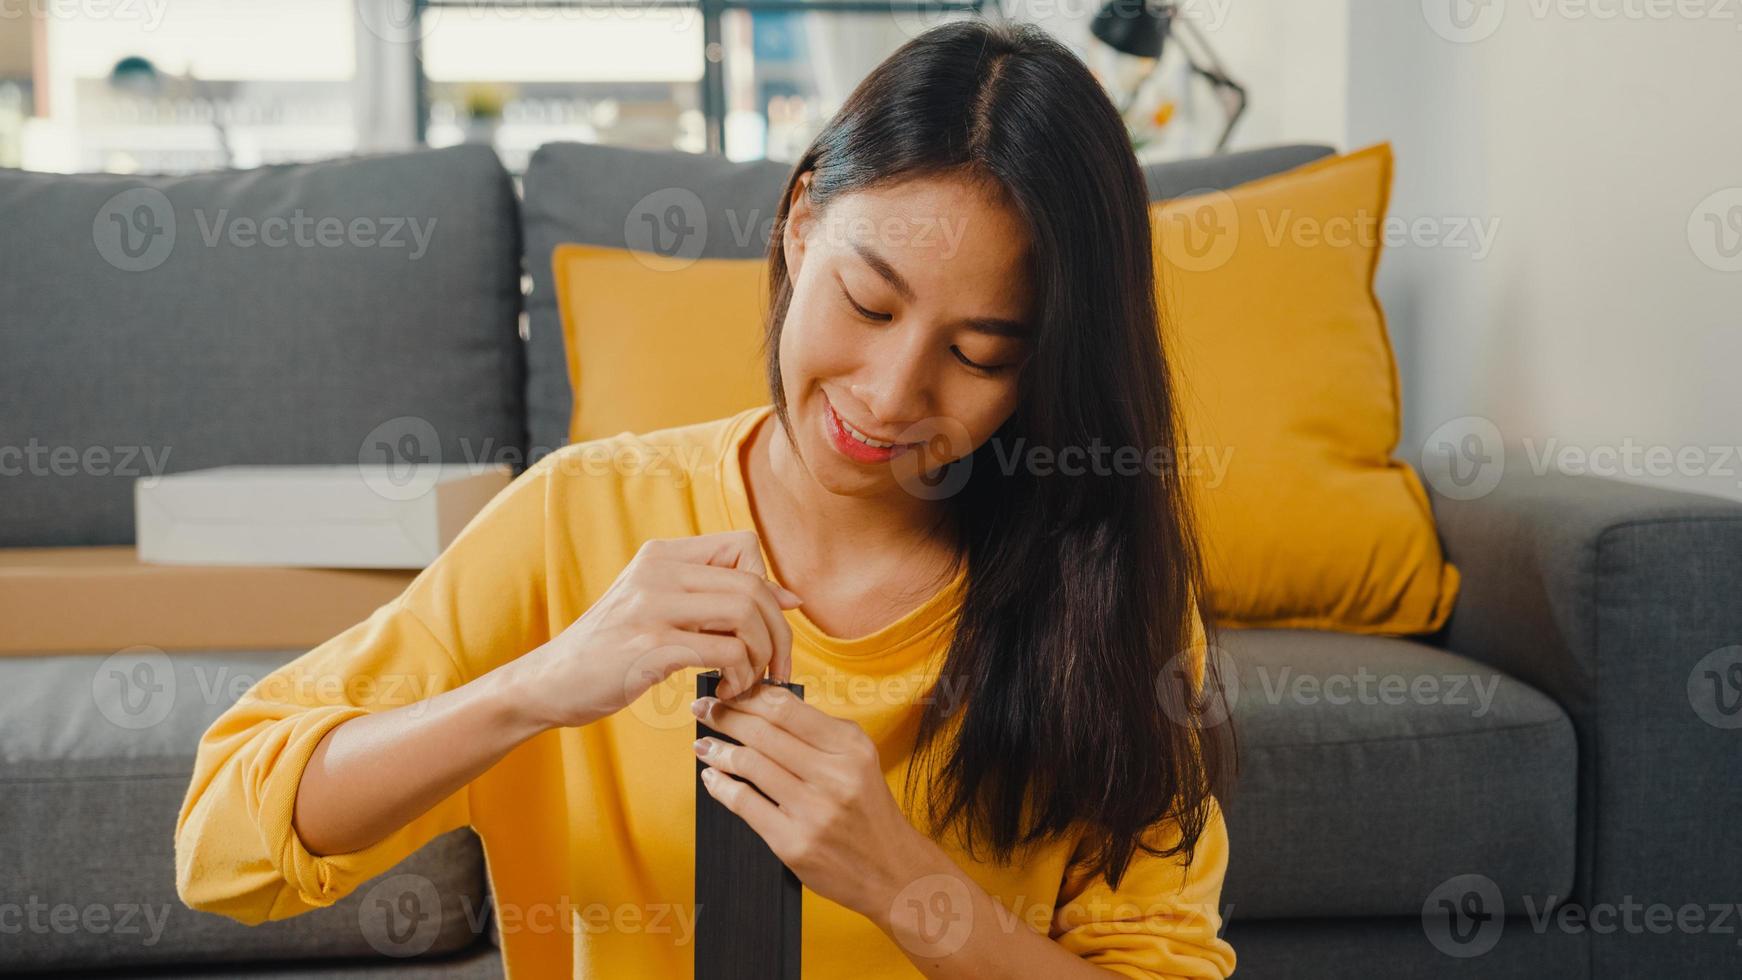 mulher jovem asiática feliz desempacotando a caixa e lendo as instruções para montar a mobília nova decorar a mesa de construção de casa com caixa de papelão na sala de estar em casa. foto